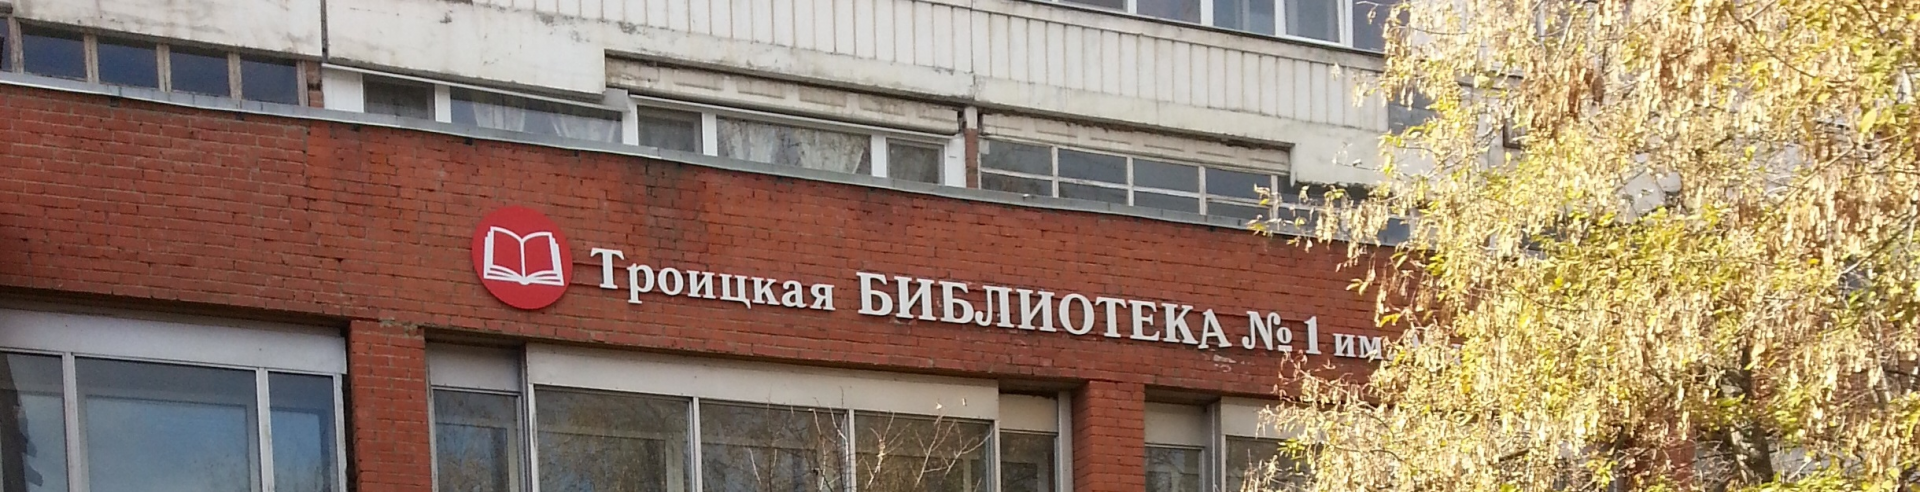 Библиотеку Михайловых посетили школьники